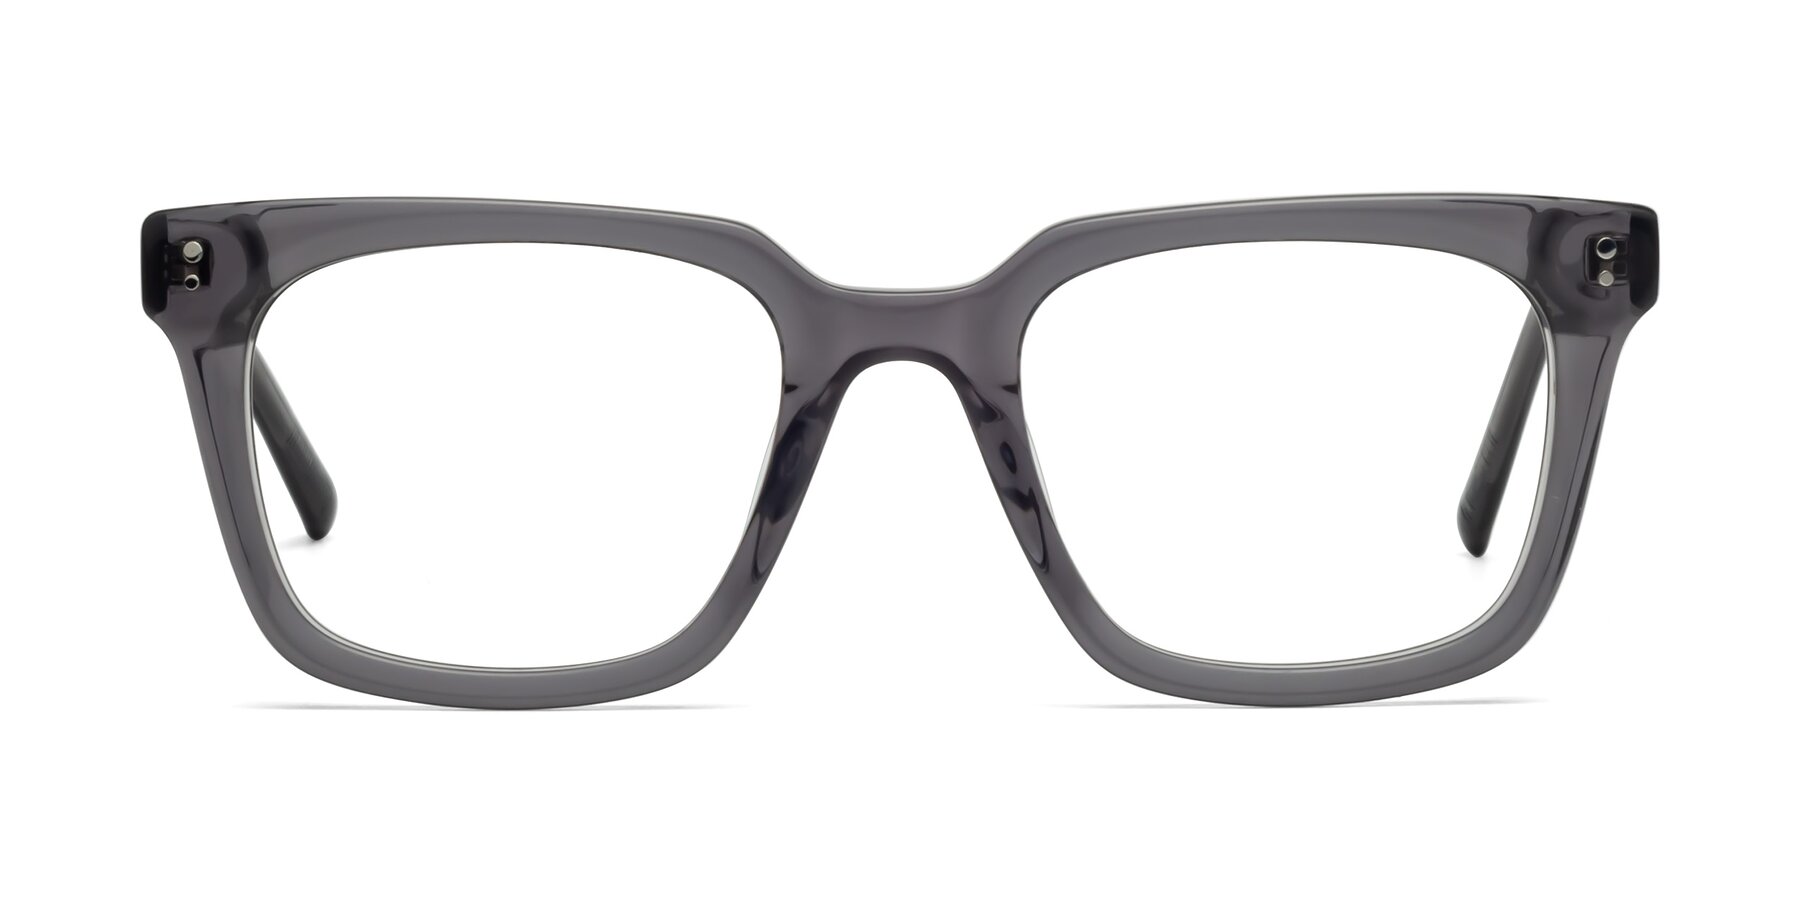 Clark - Gray Sunglasses Frame